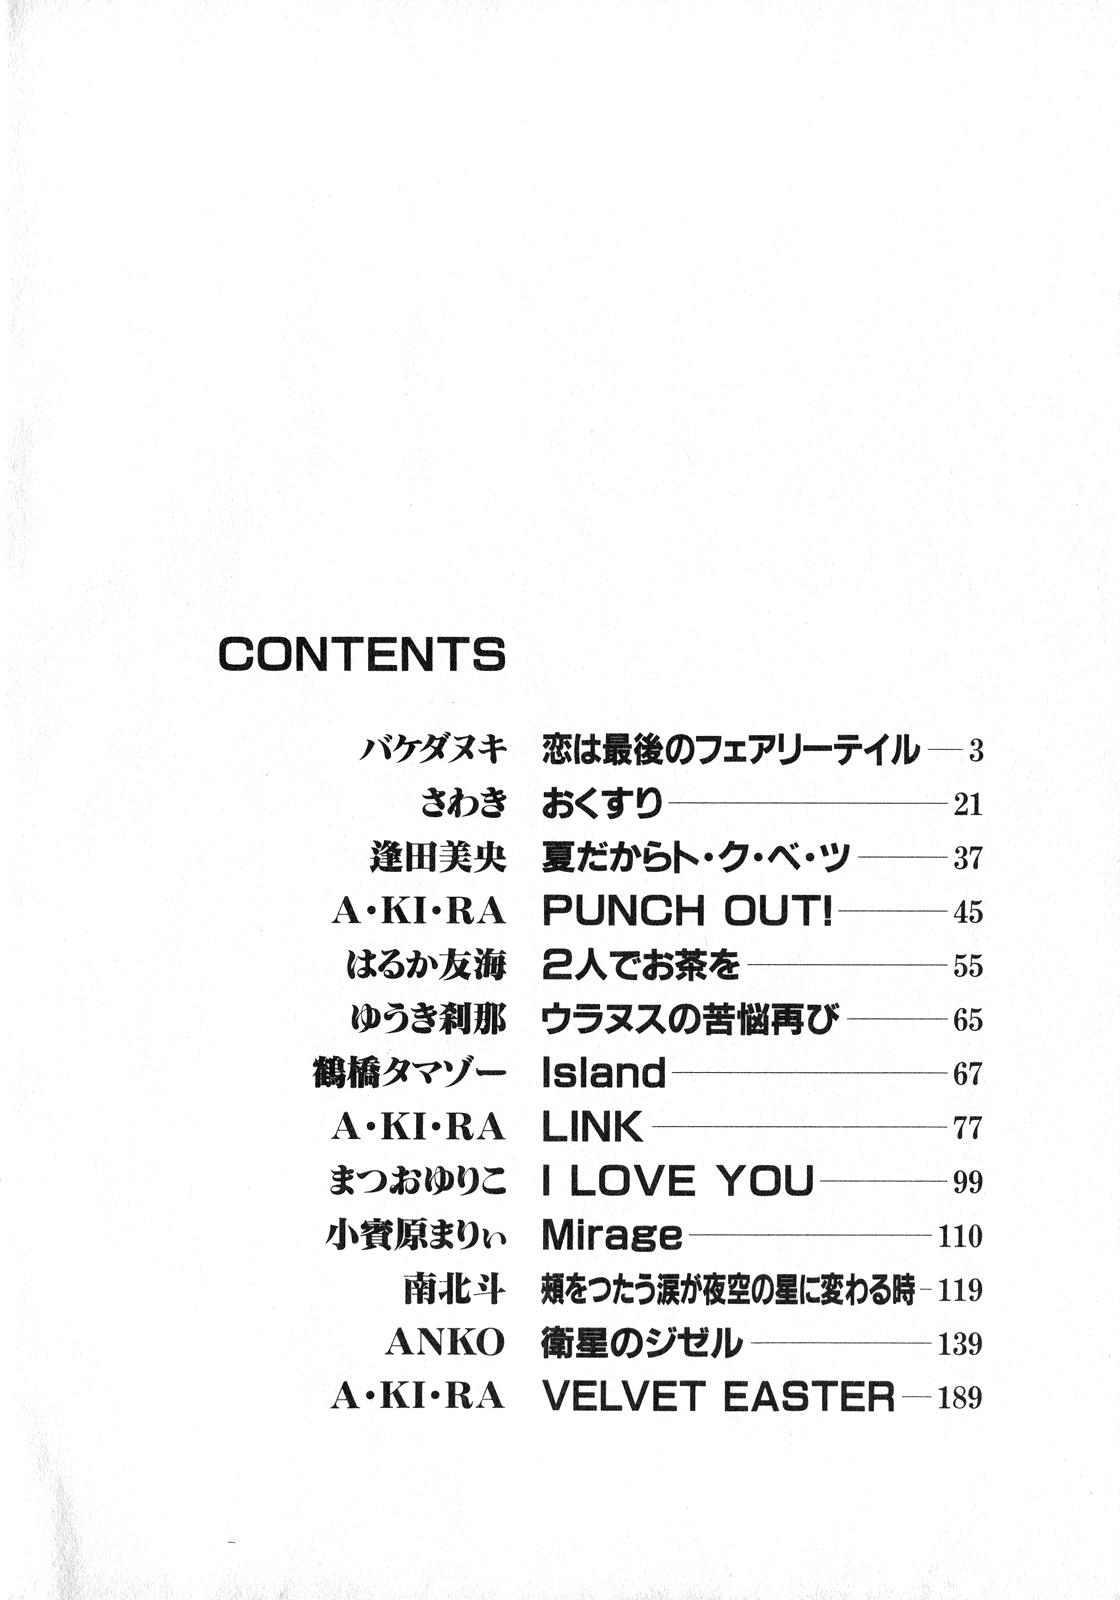 Amateur Blowjob Lunatic Party 8 - Sailor moon Butt Plug - Page 3